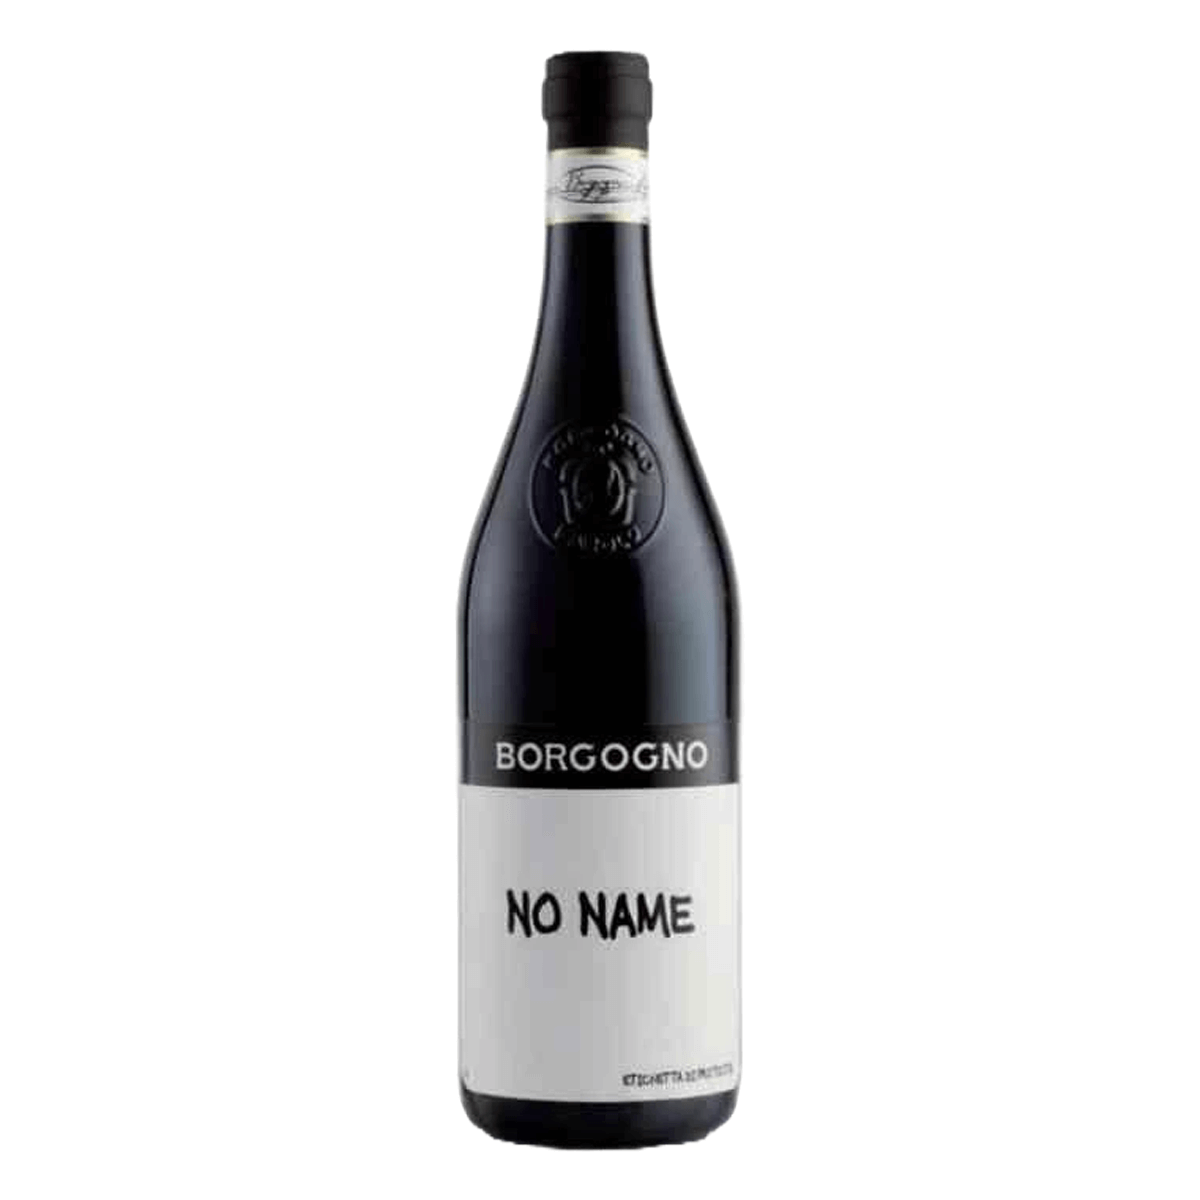 TAG Liquor Stores Canada Delivery-Borgogno Nebbiolo No Name 750ml-wine-tagliquorstores.com